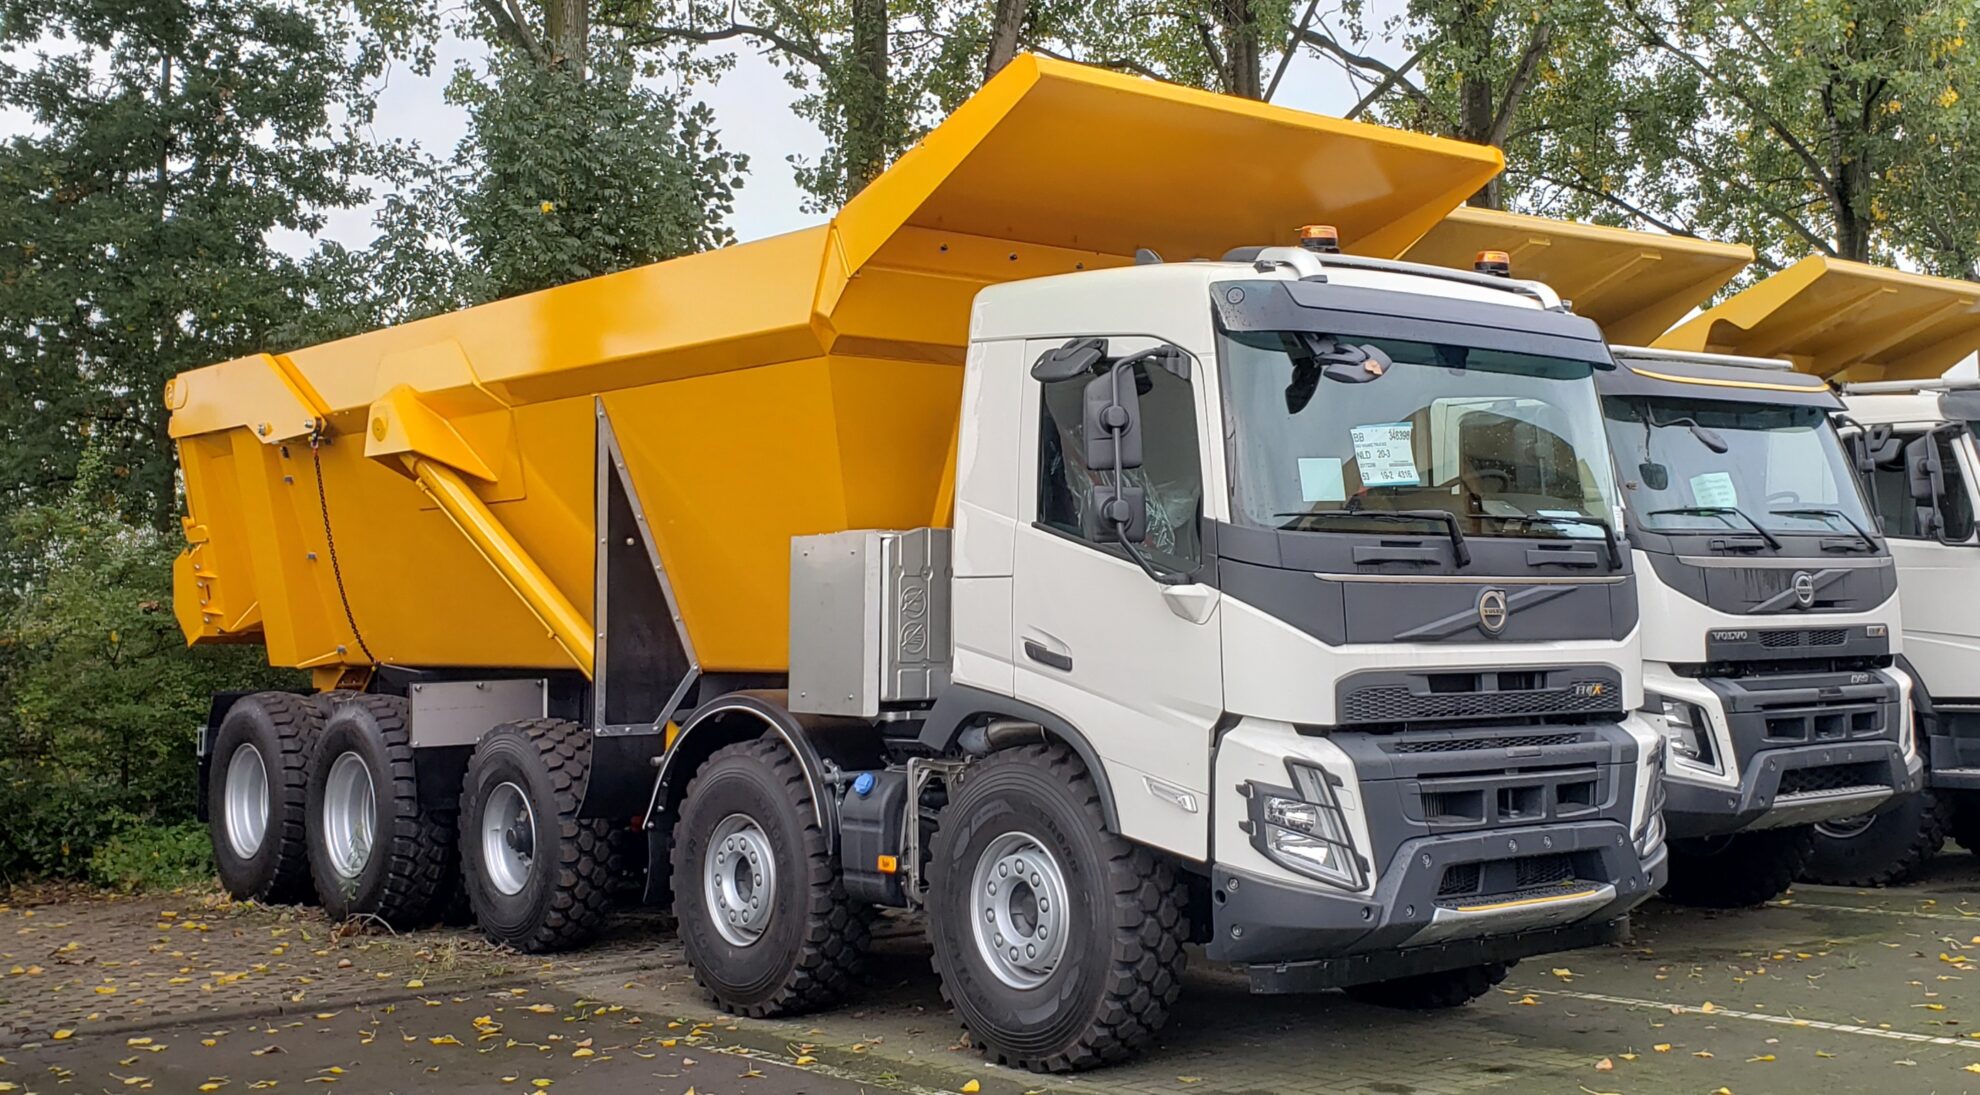 BAS Mining Trucks introduce i nuovi camion per il trasporto minerario 8×4 e 10×4 diffusi FMX460-10x4WS-1980x1095